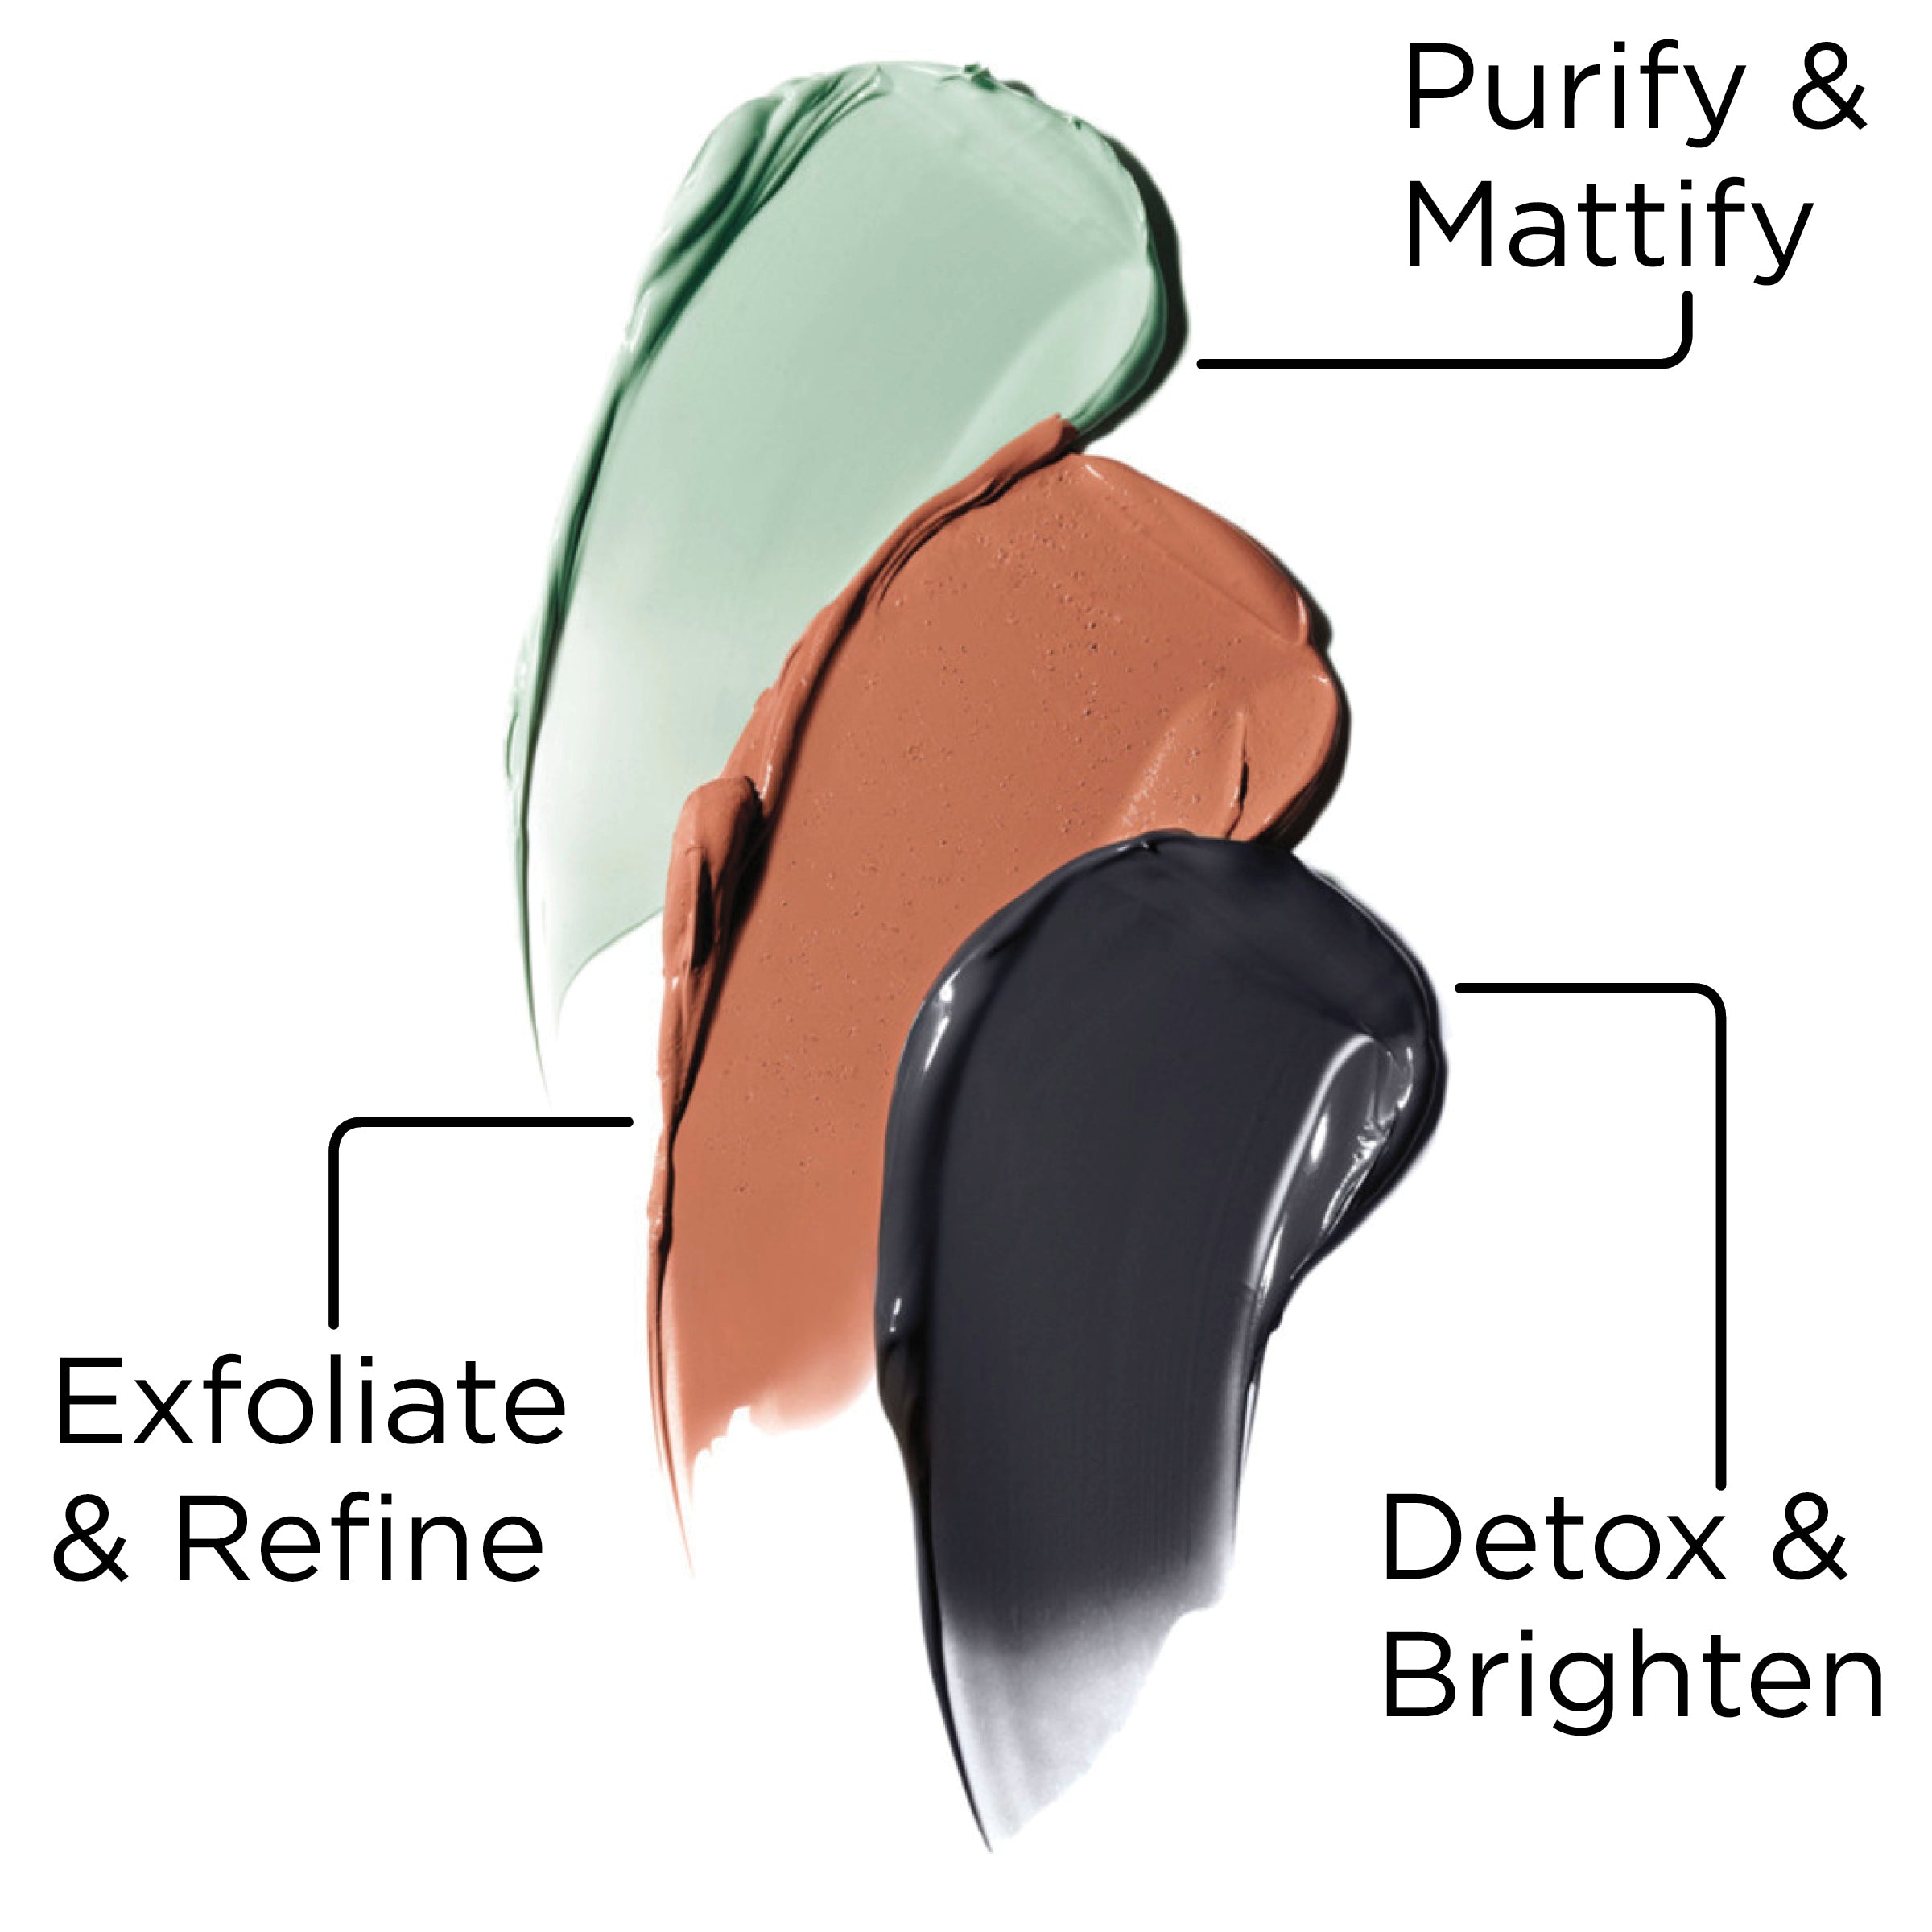 L'oreal Pure Clay Mask - Detox & Brighten